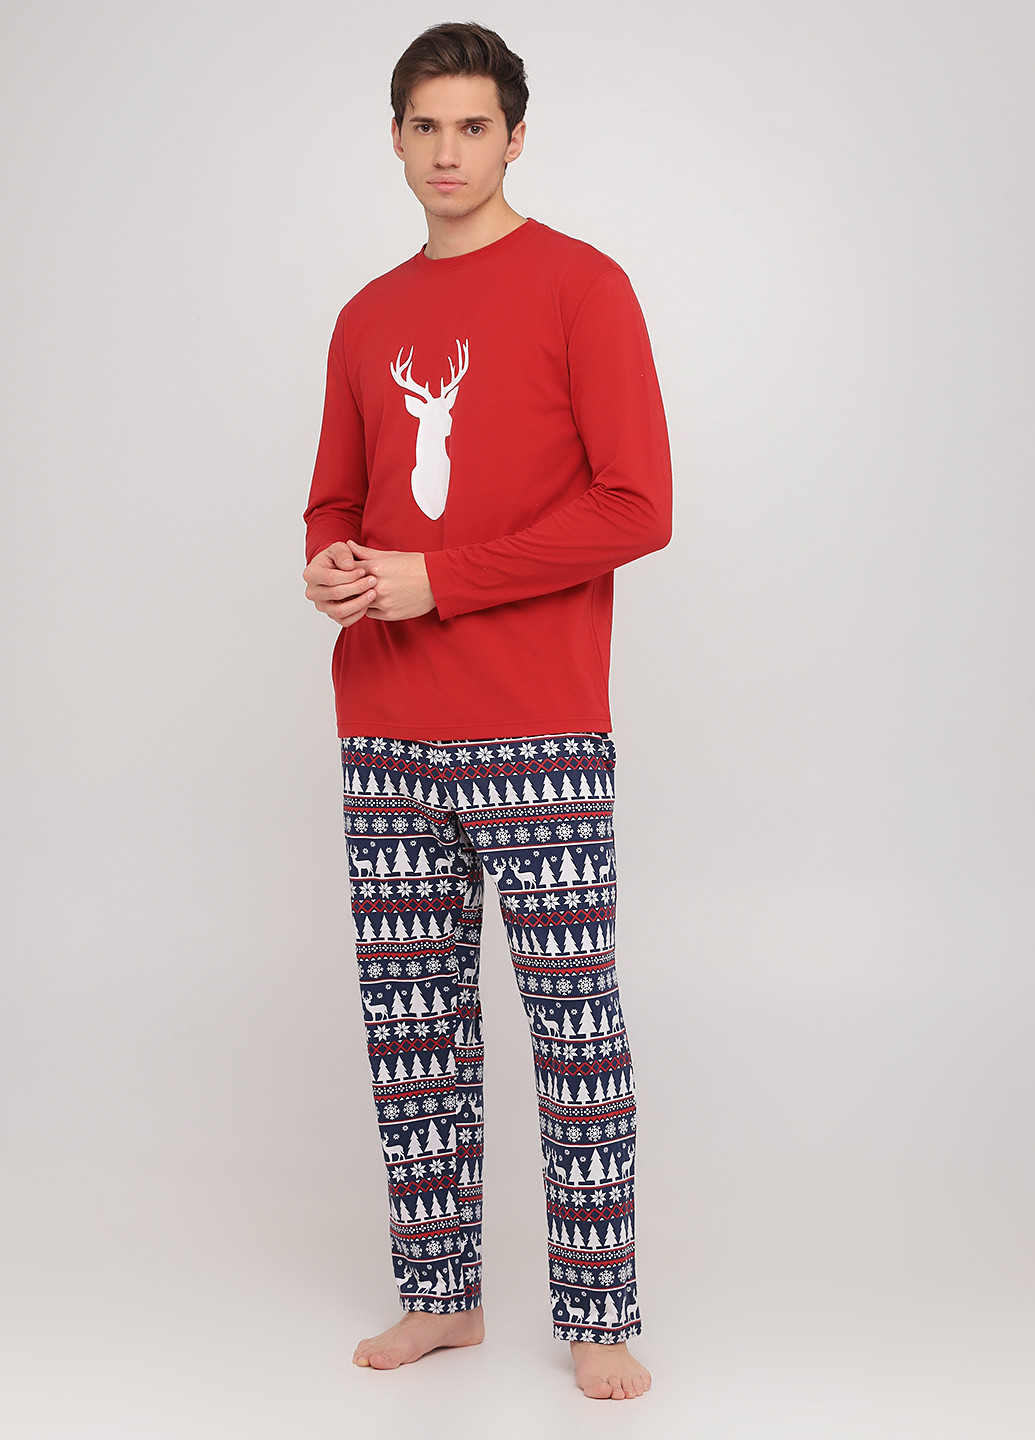 Пижама (лонгслив, брюки) Sleepyheads лонгслив + брюки рисунок комбинированная домашняя хлопок, трикотаж